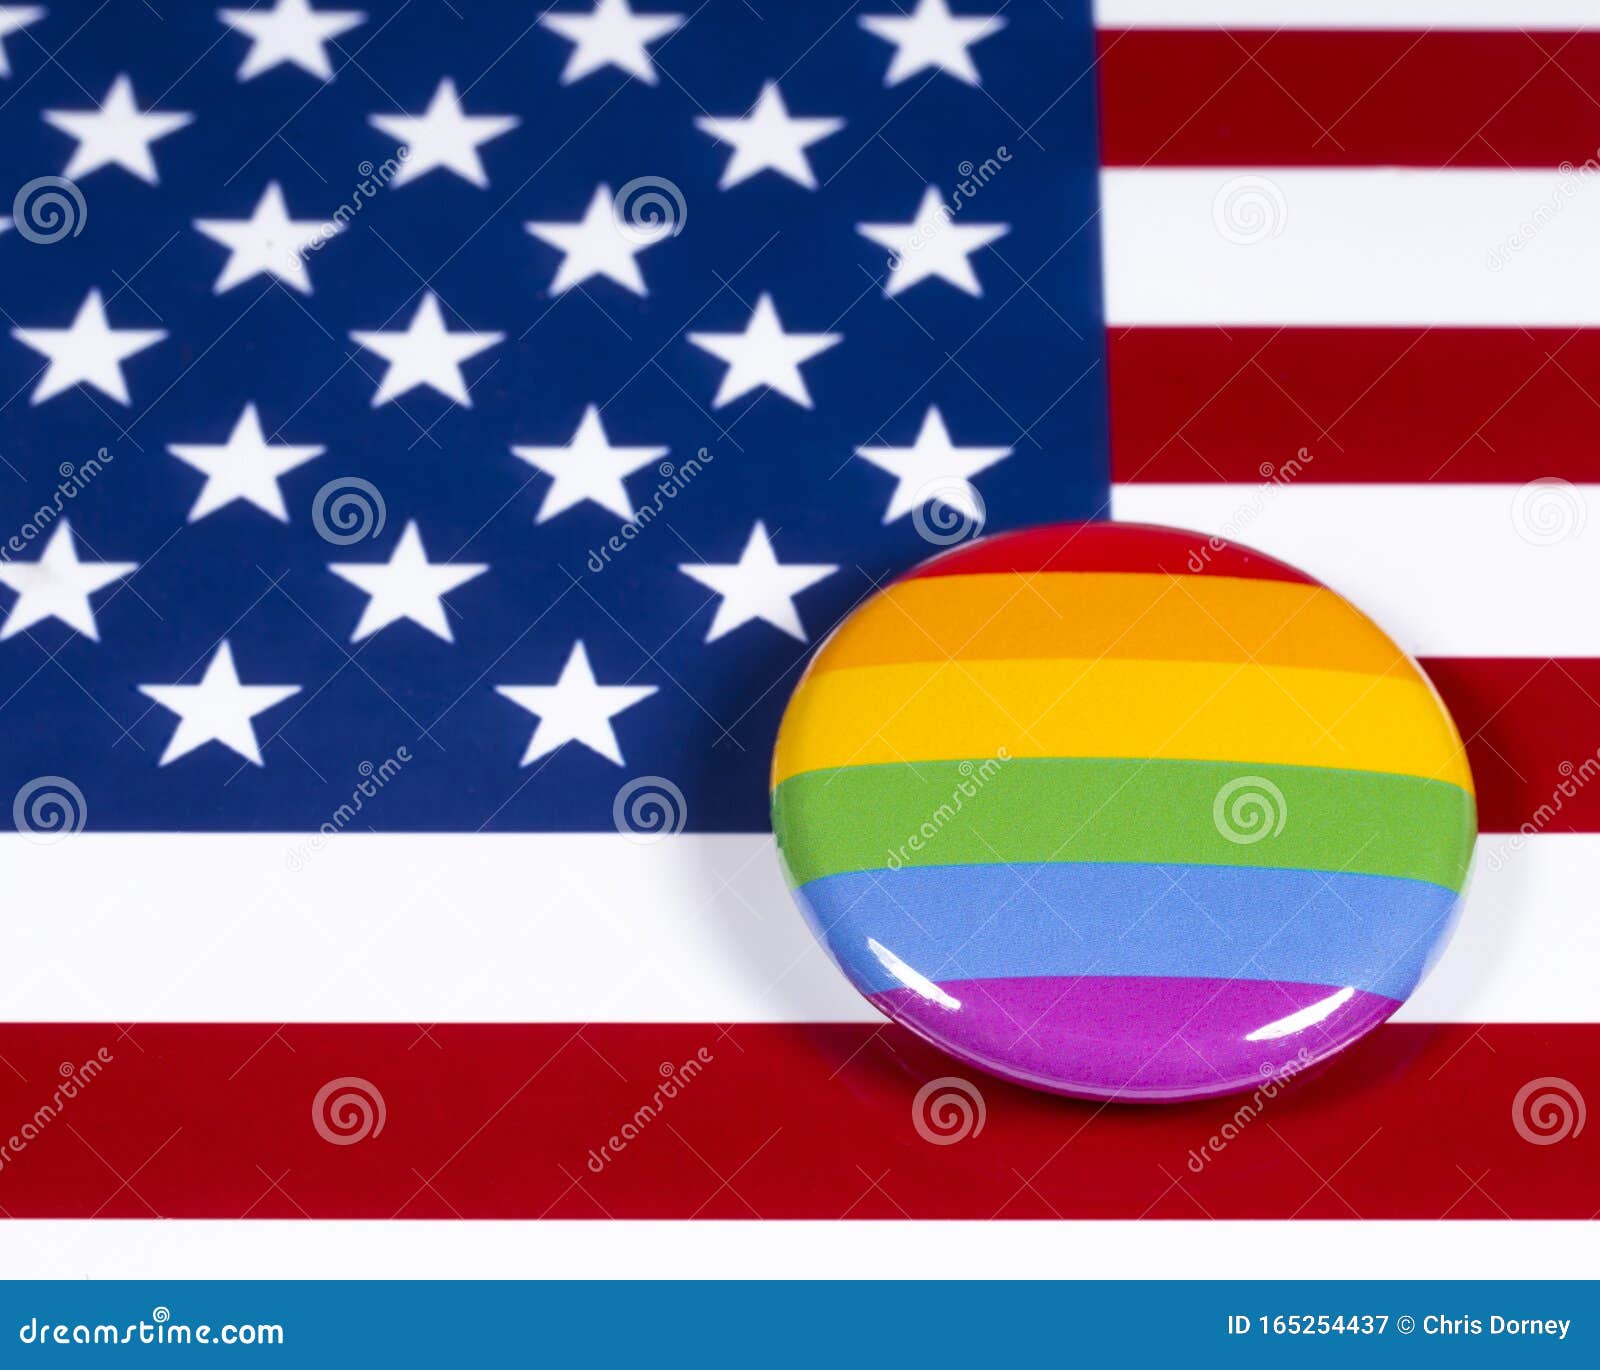 Lgbtq Rainbow Symbol And The Usa Flag Stock Image Image